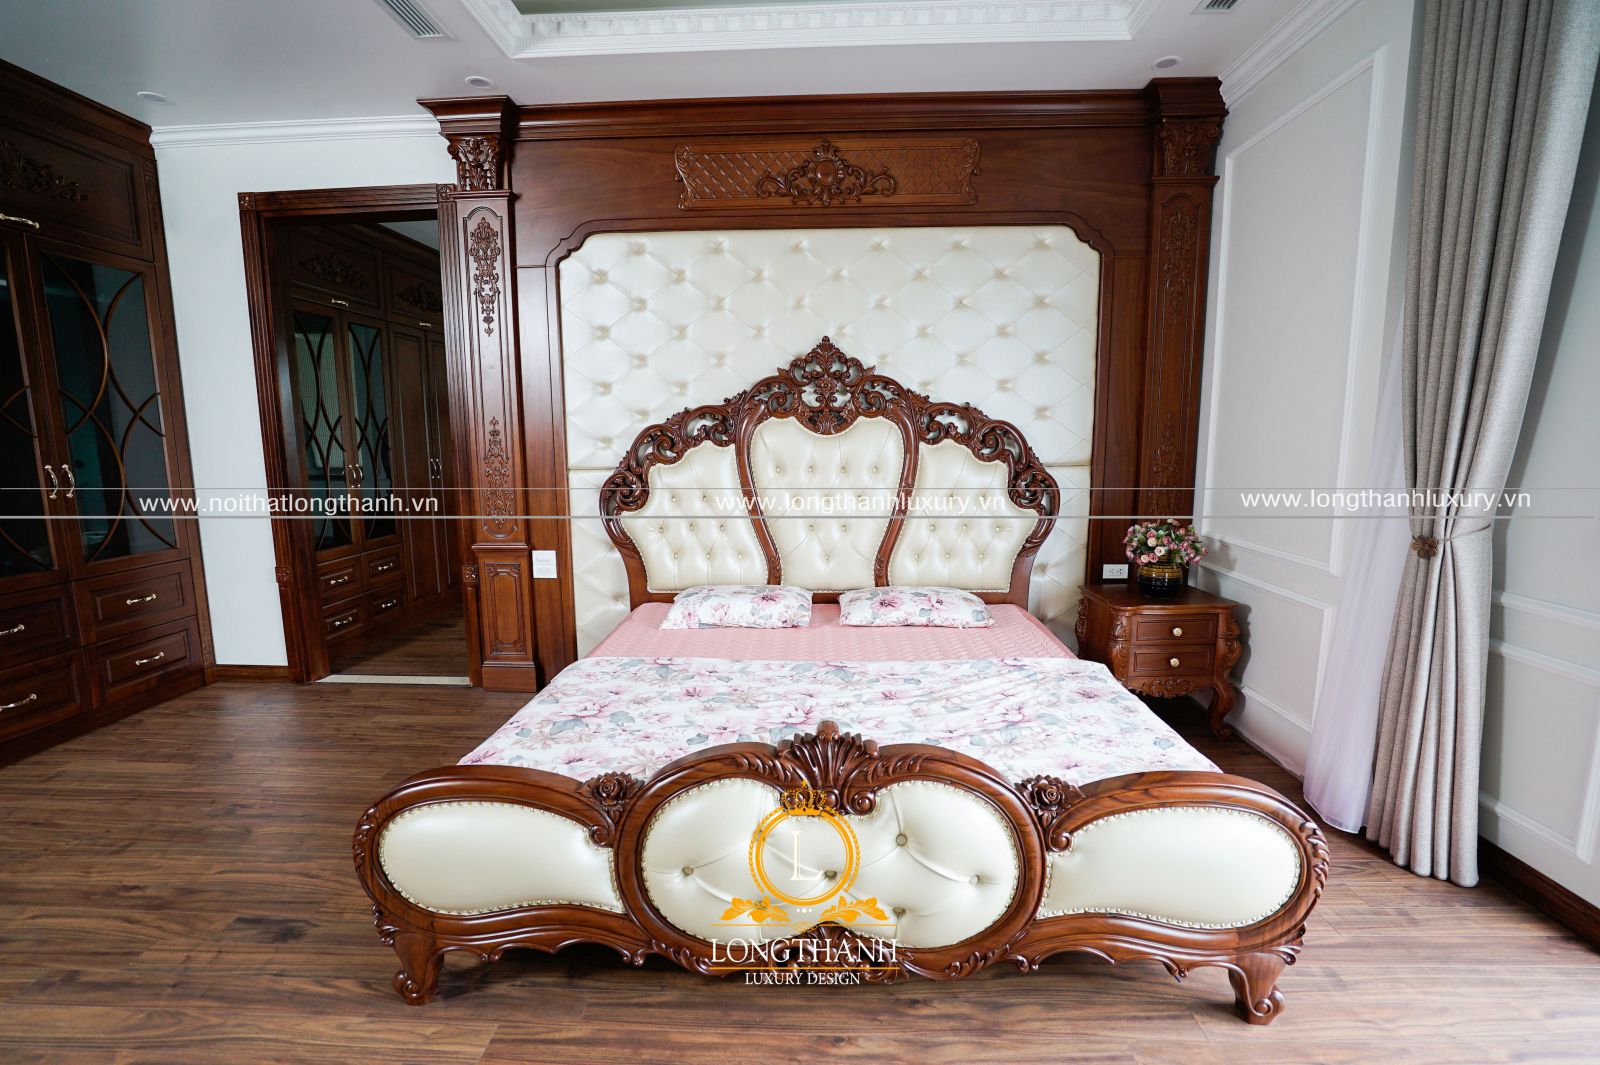 Giường ngủ tân cổ điển được thiết kế mới nhất